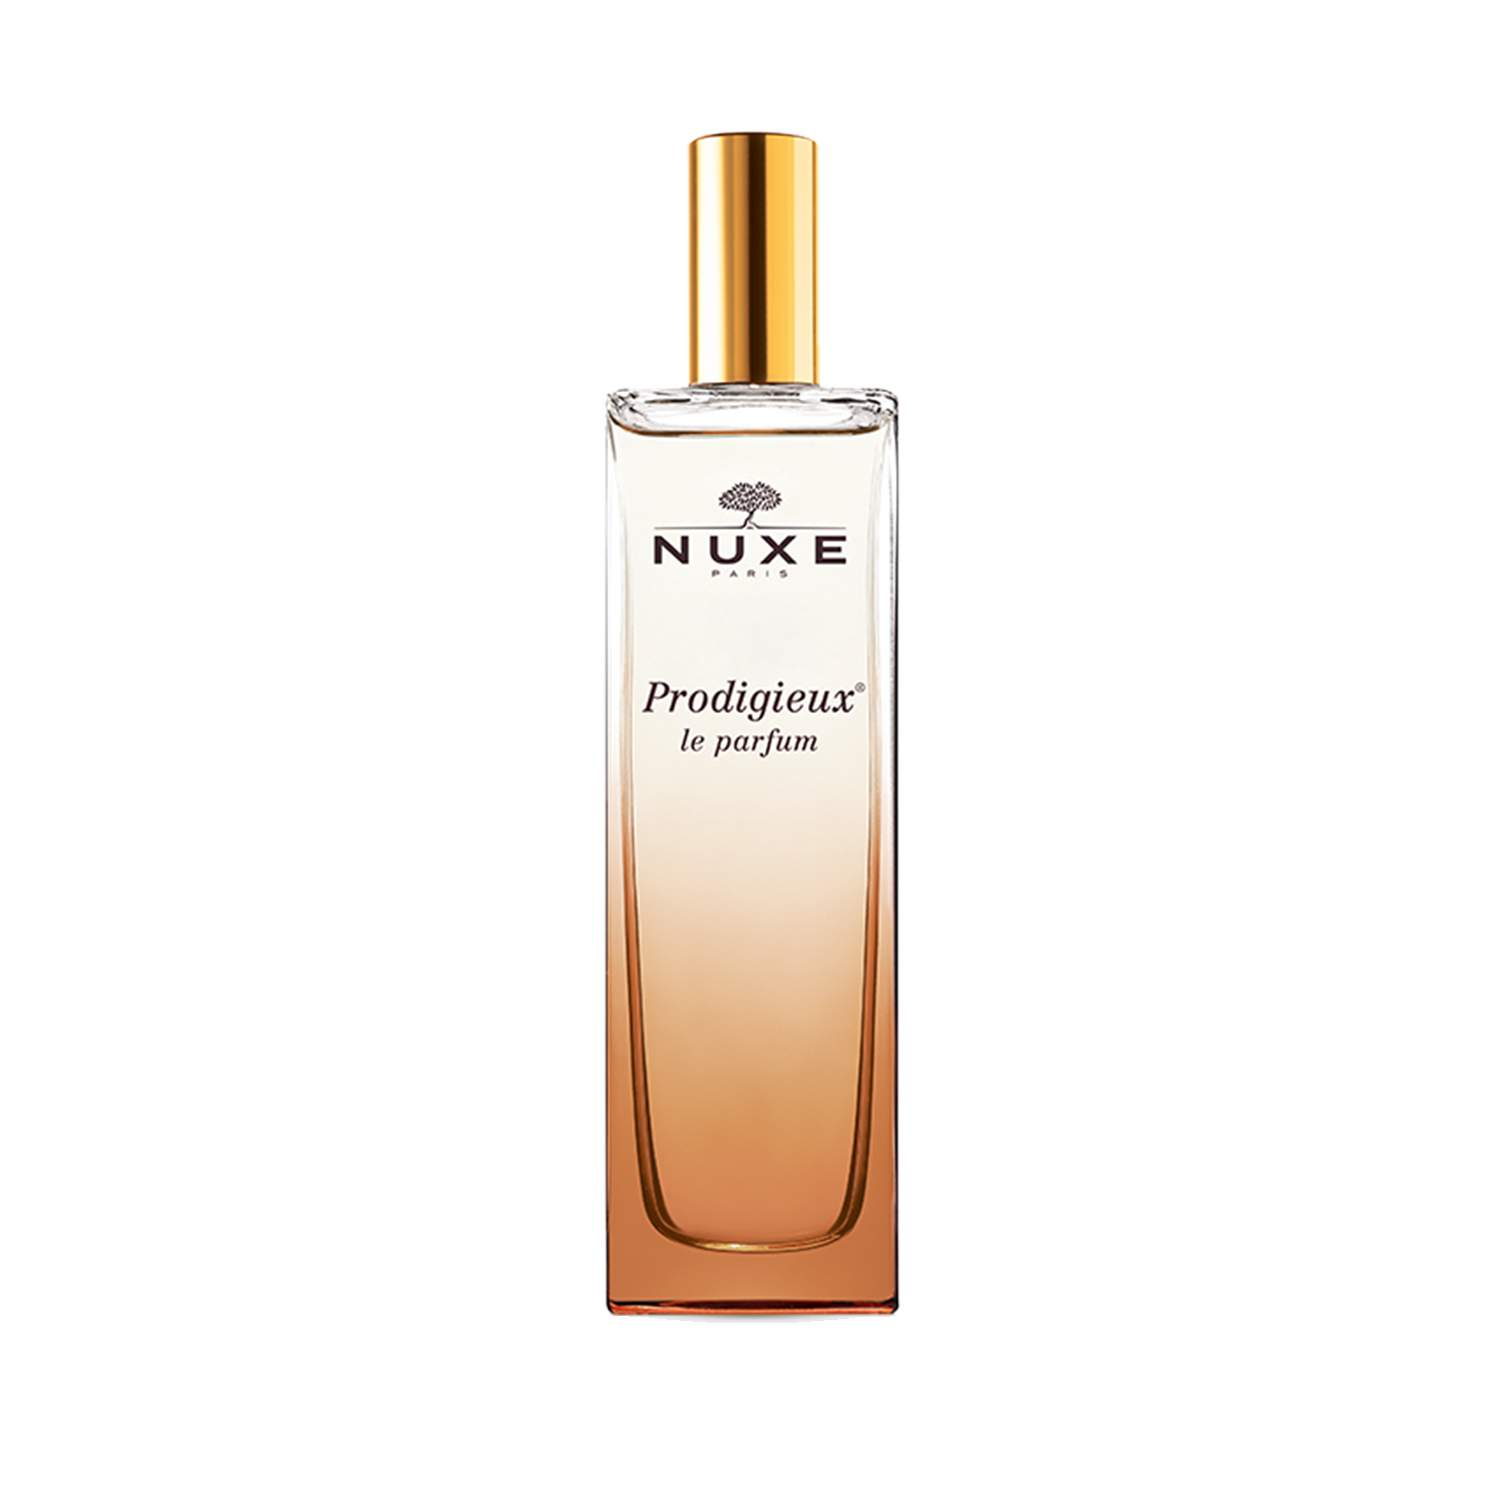 NUXE Prodigieux ® Le Parfum NUXE Prodigieux ® Le Parfum 1